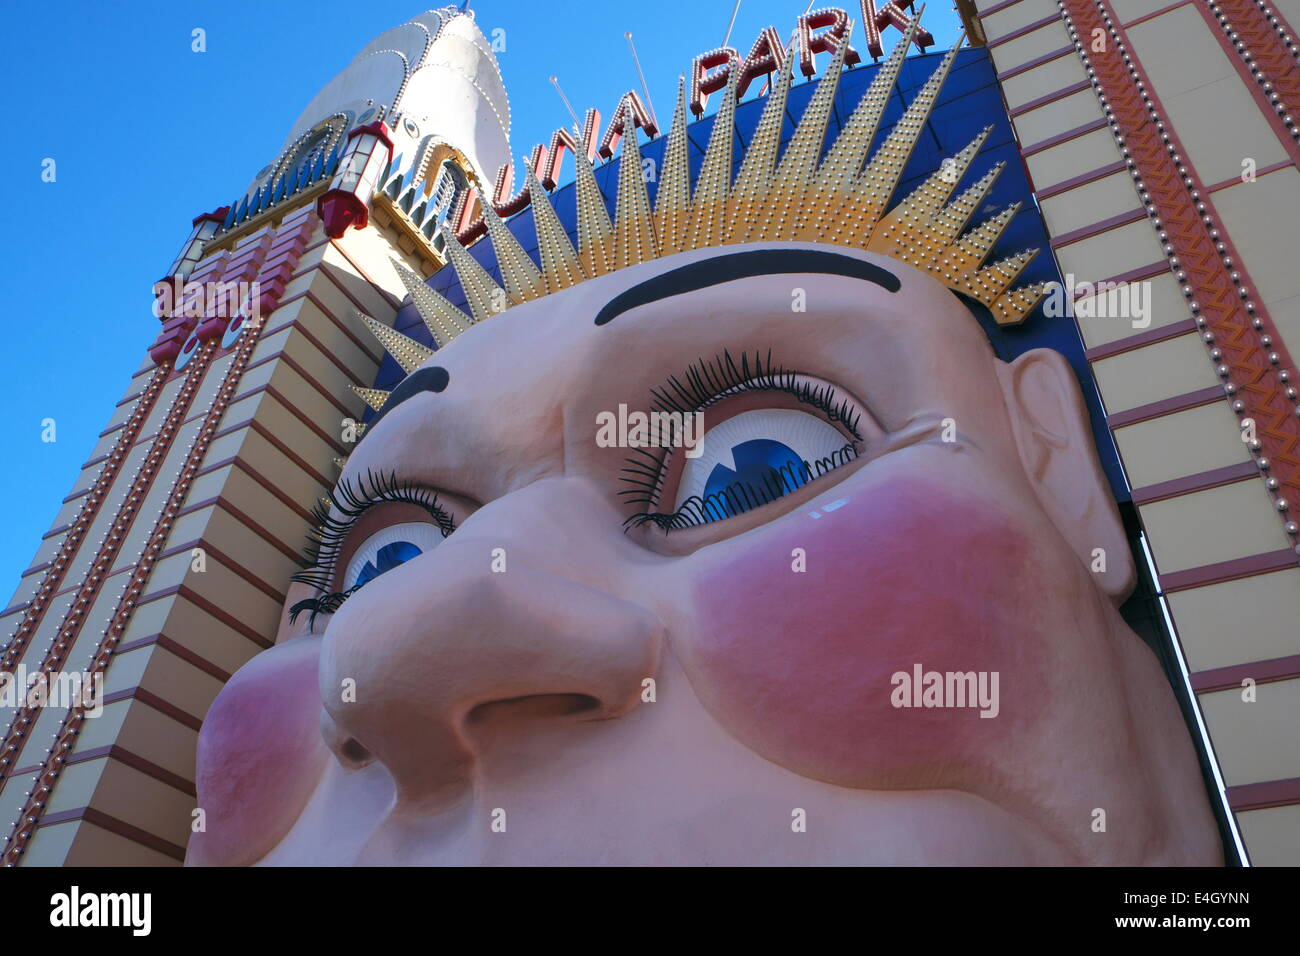 famous clown face at entrance to luna park,milsons point,sydney,australia Stock Photo